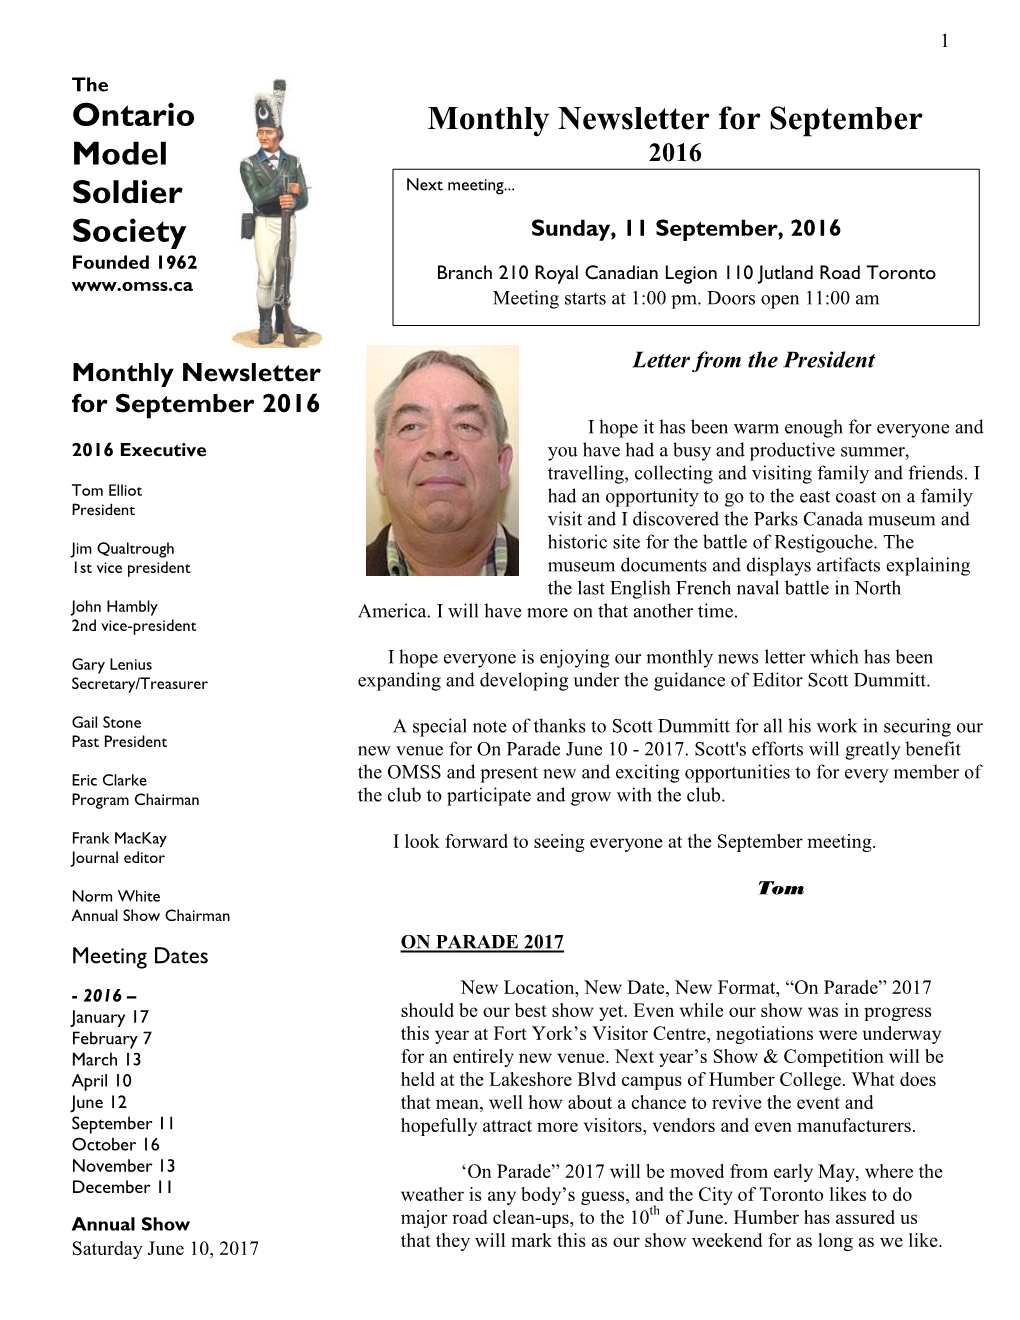 Ontario Model Soldier Society Monthly Newsletter for September